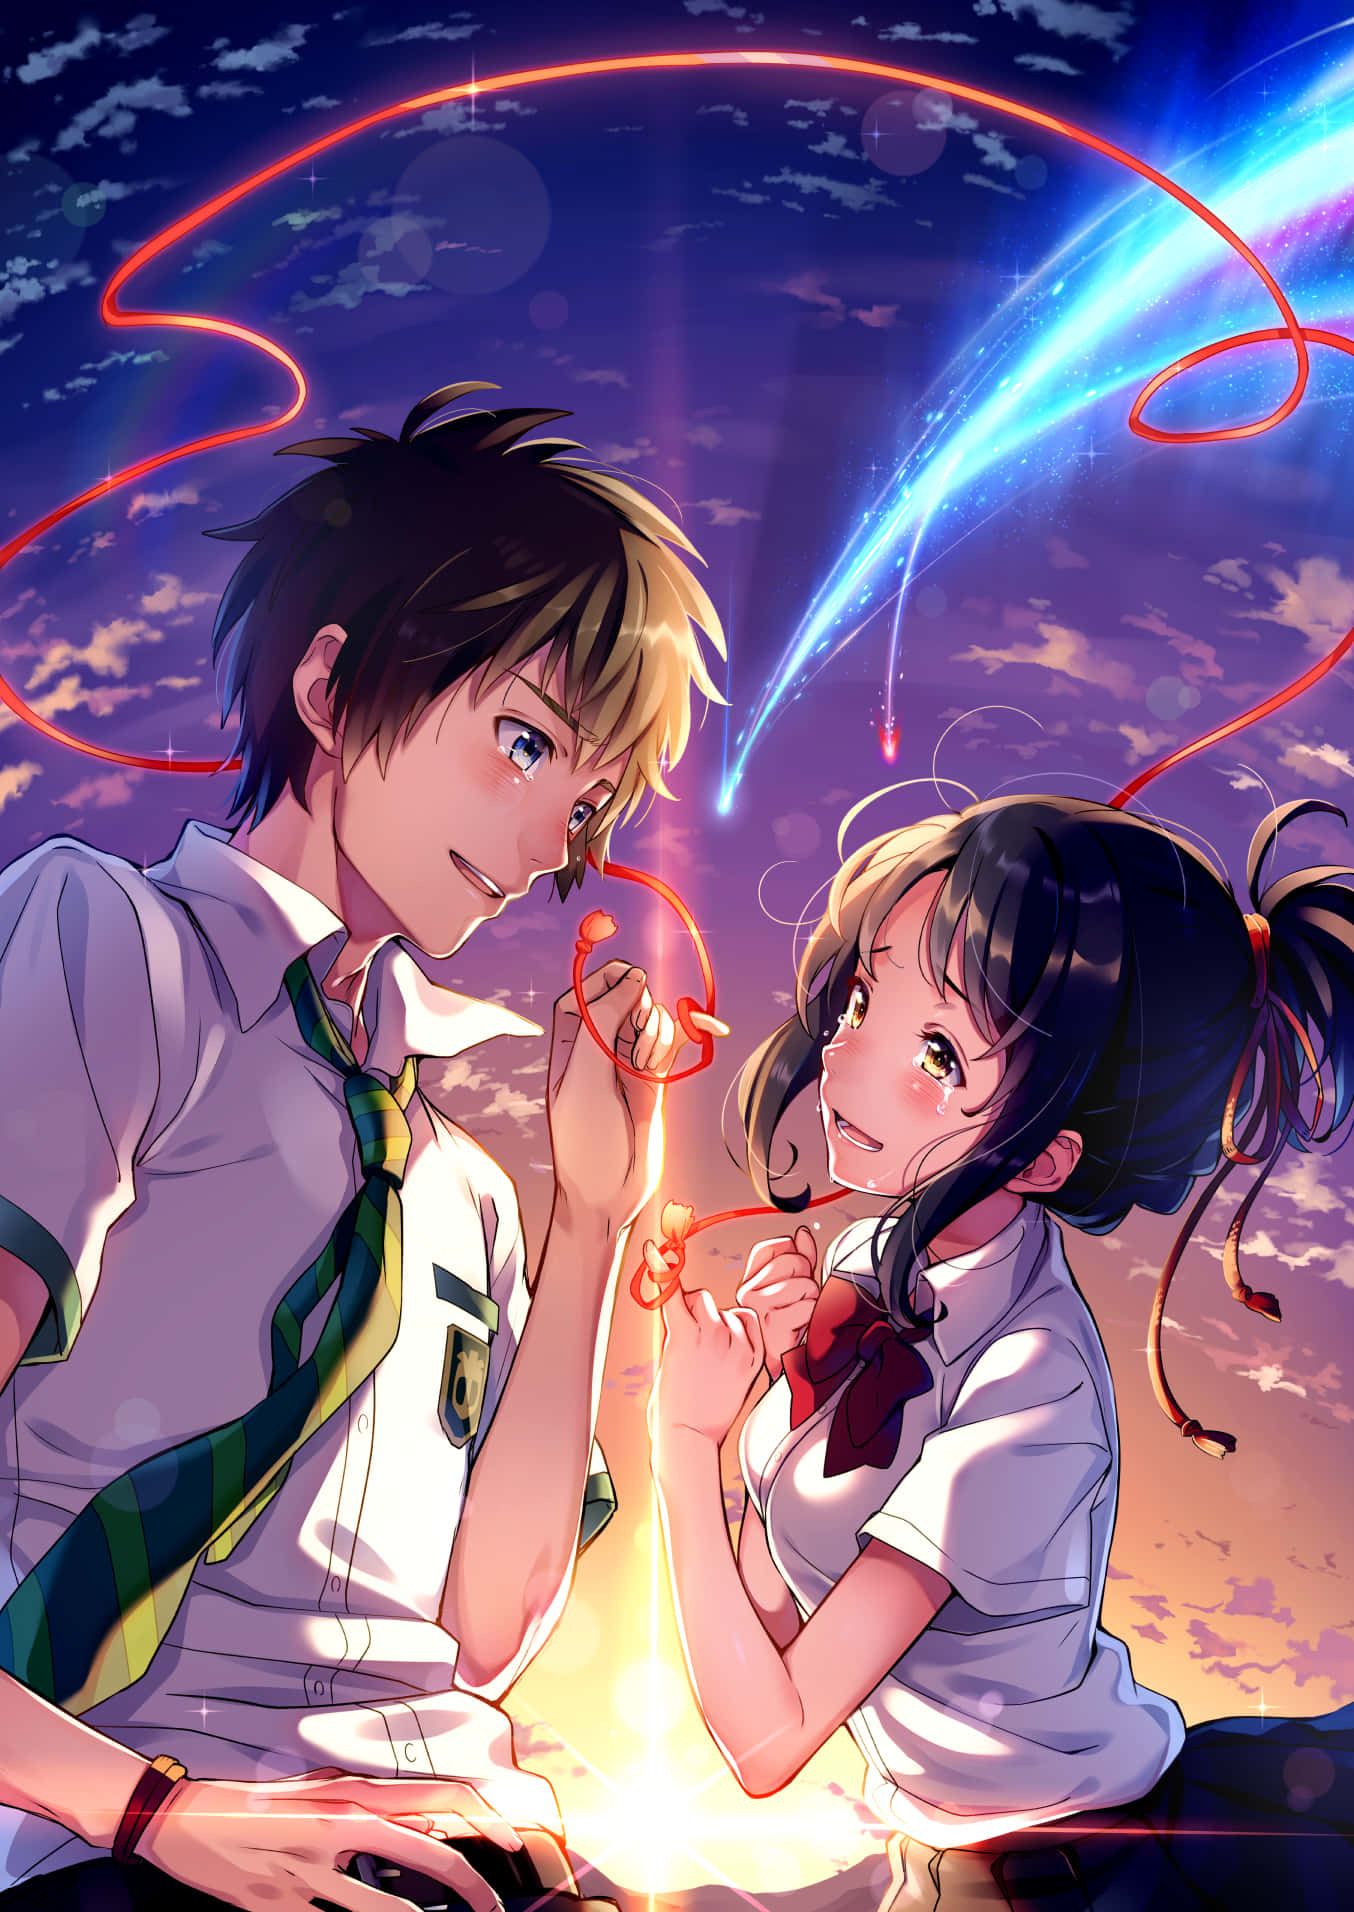 Mitsuha and Taki explore the night sky in Kimi No Na Wa